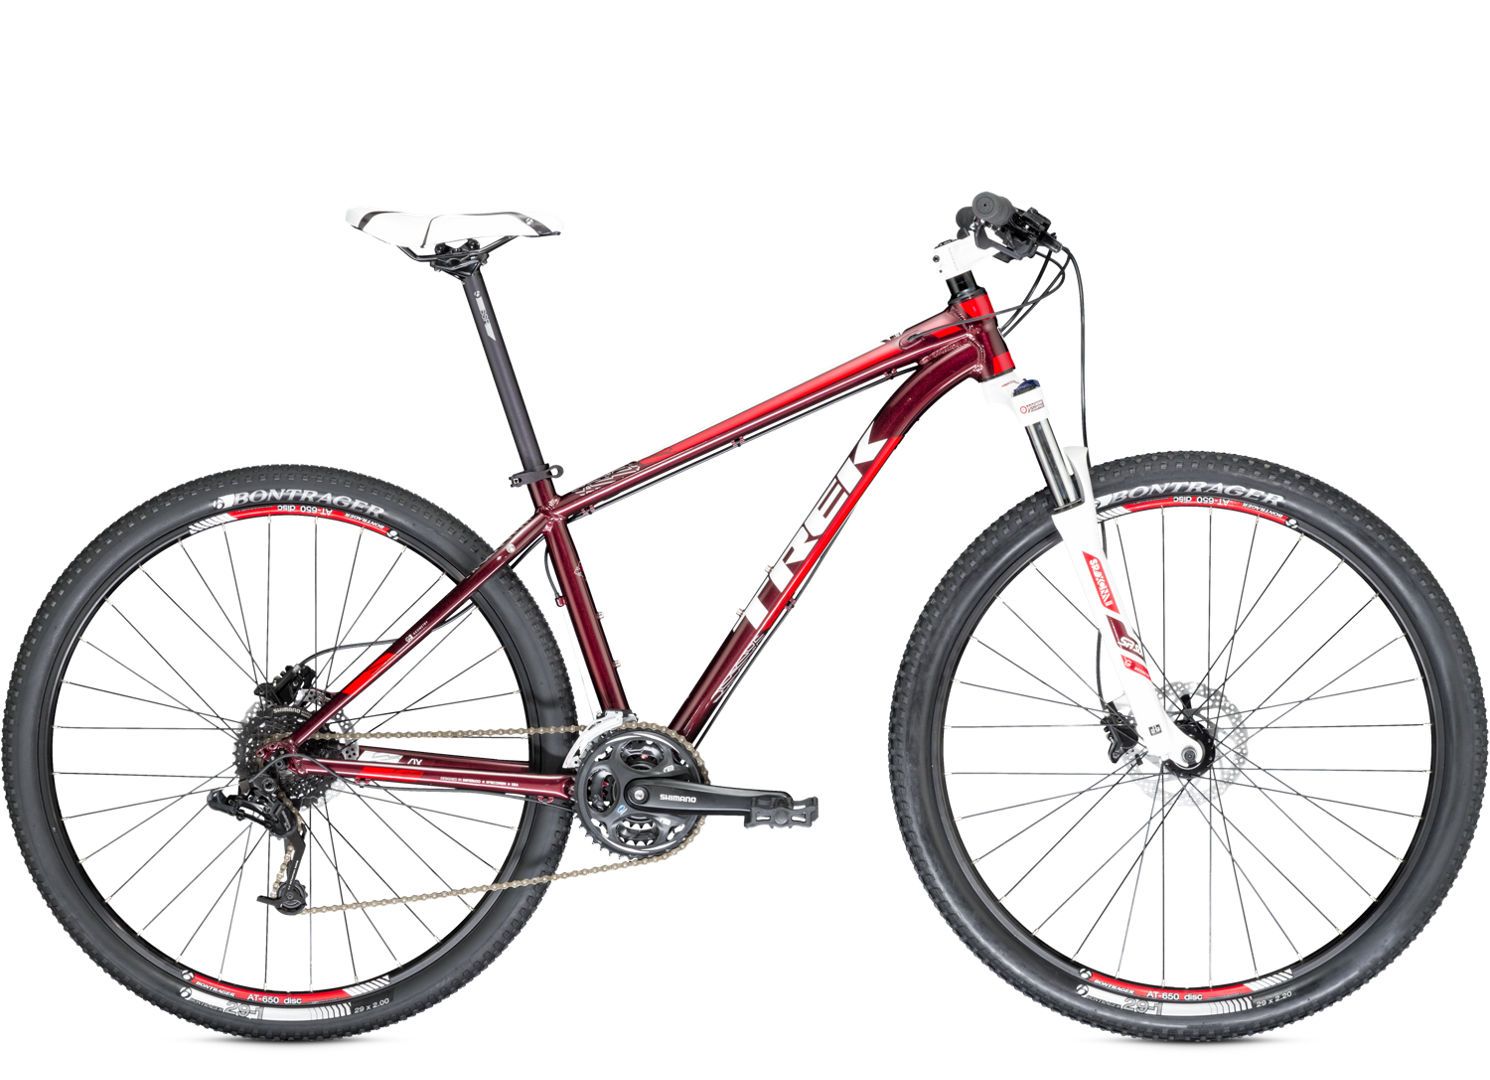  Отзывы о Горном велосипеде Trek X-Caliber 6 2014